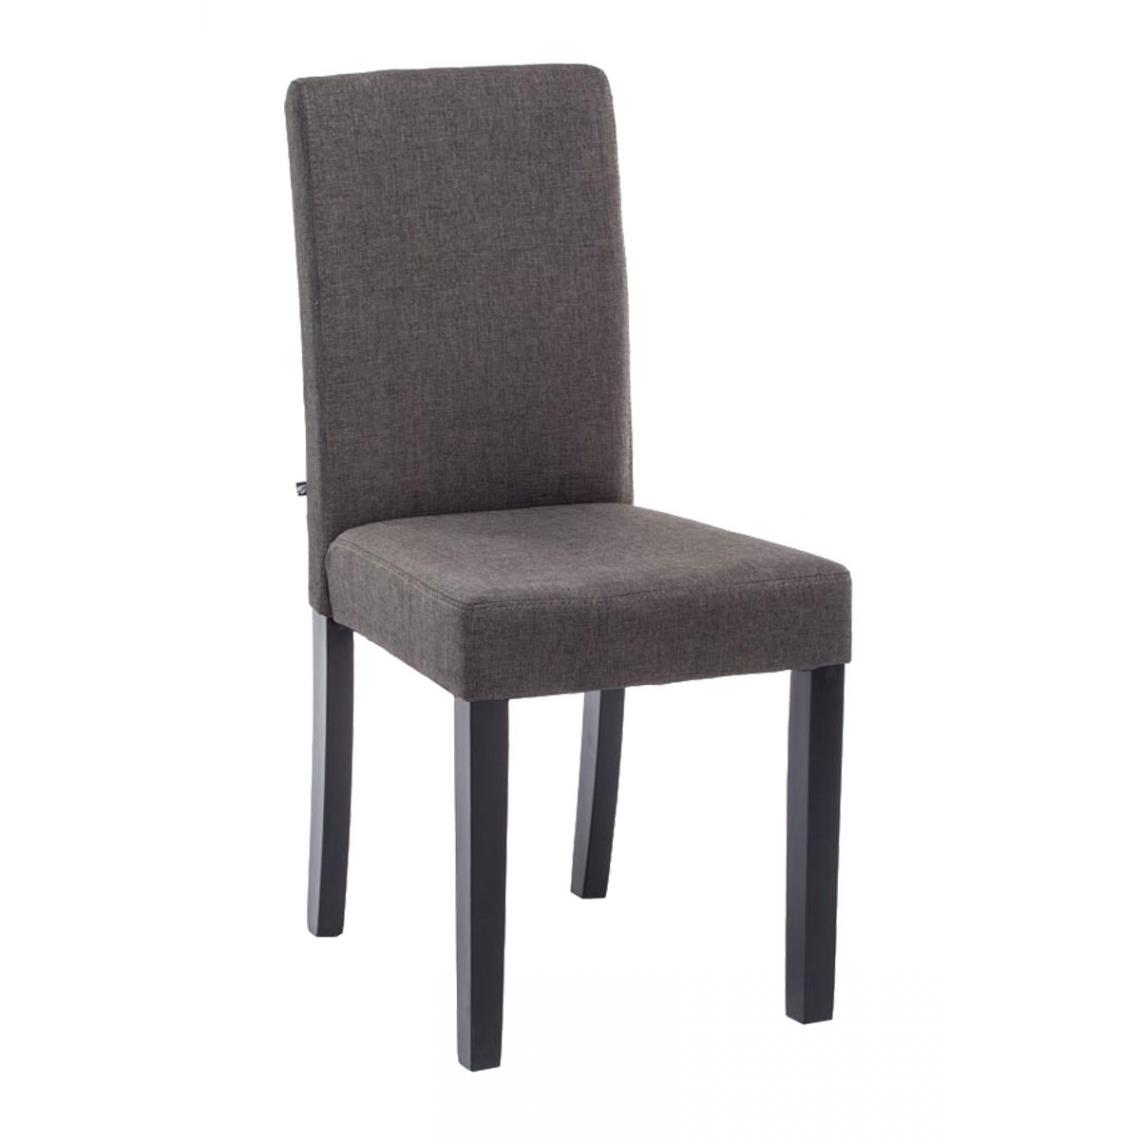 Icaverne - Joli Chaise de salle à manger Rabat tissu noir couleur gris foncé - Chaises